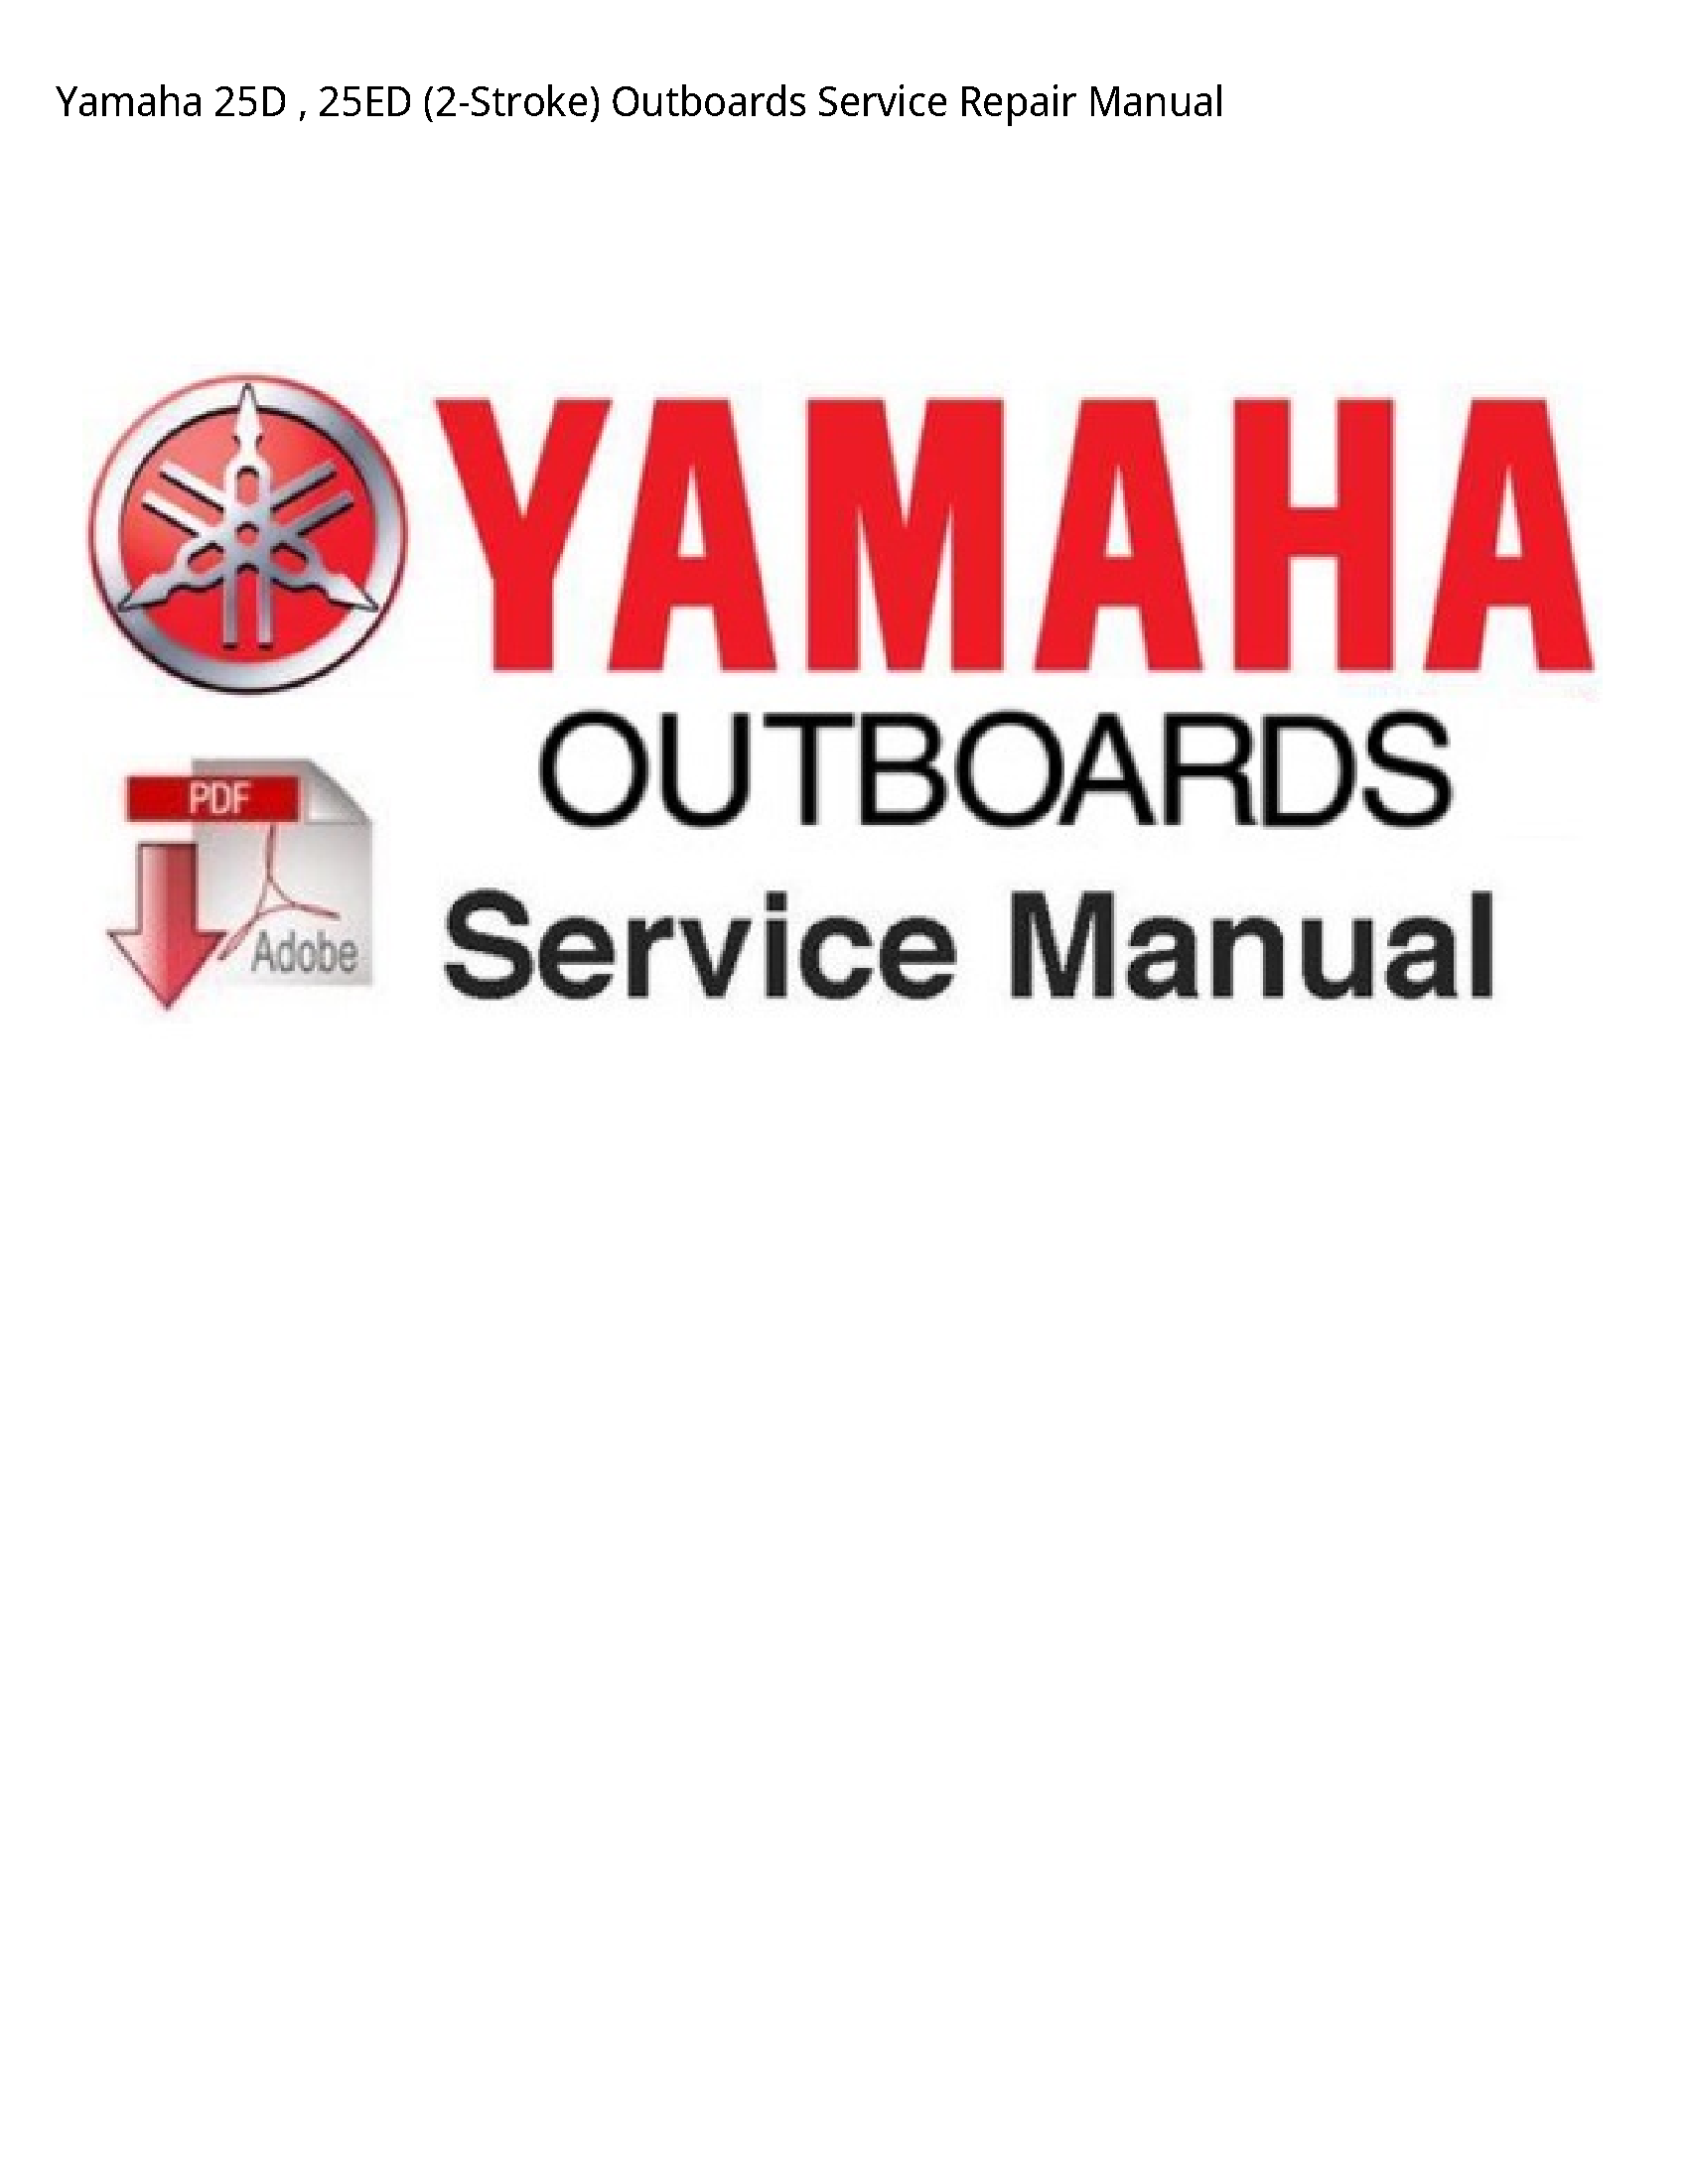 Yamaha 25D Outboards manual